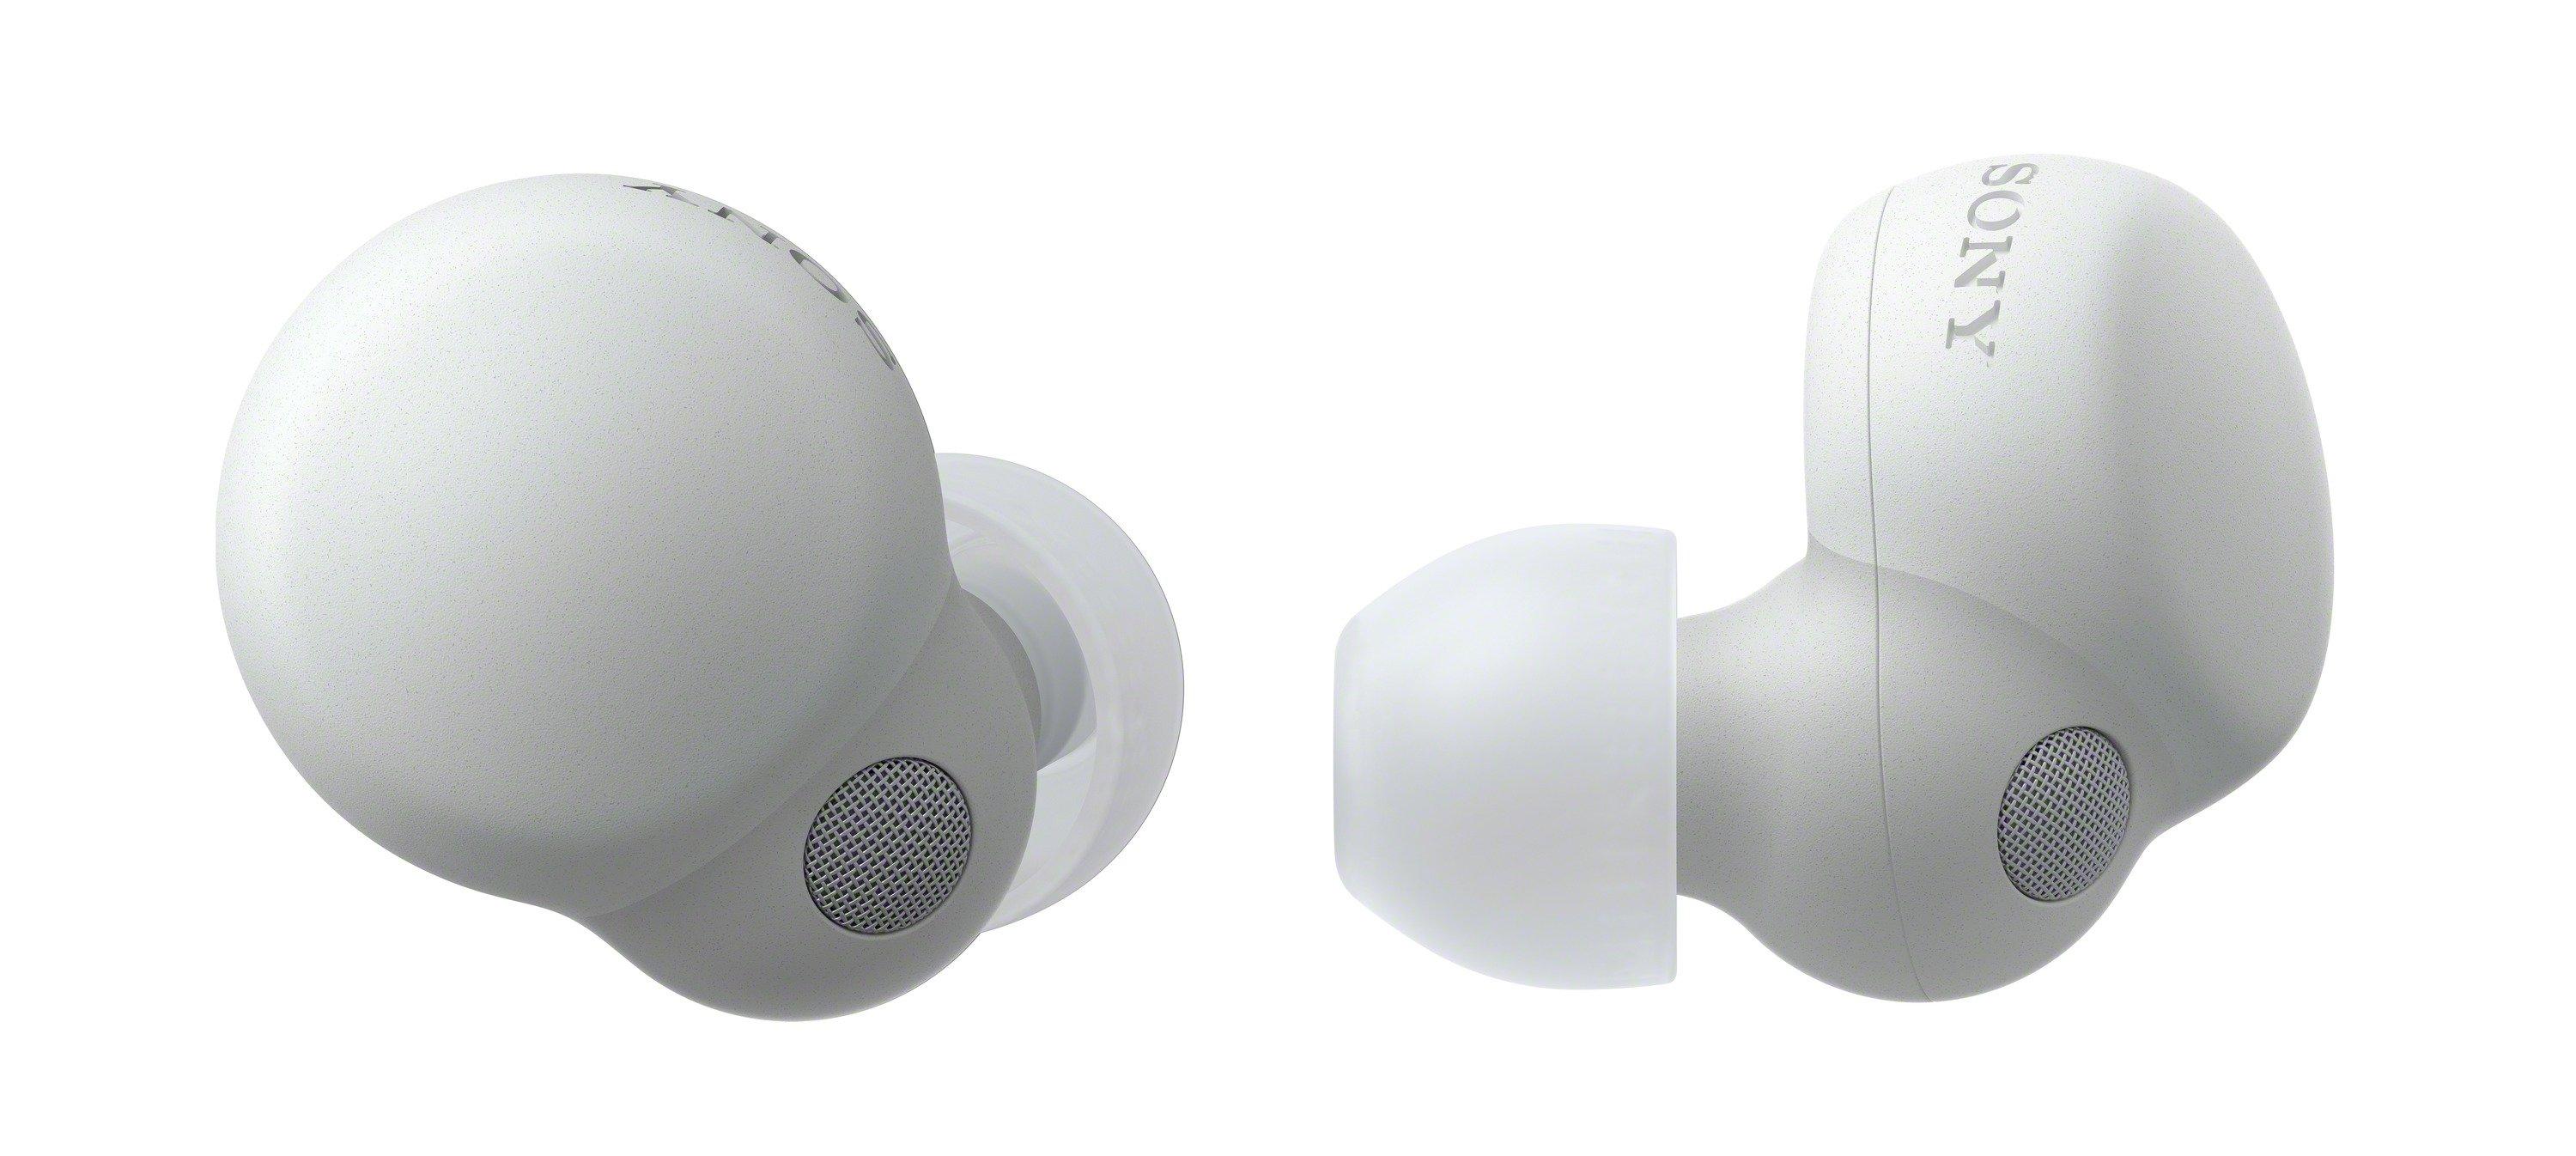 SONY  Sony LinkbBuds S - Auricolari True Wireless con Noise Cancelling - Fino a 20 ore di batteria con custodia - Compatibili con Alexa e Google Assistant - Microfono integrato per telefonate - Connessione Bluetooth Affidabile - Bianco 